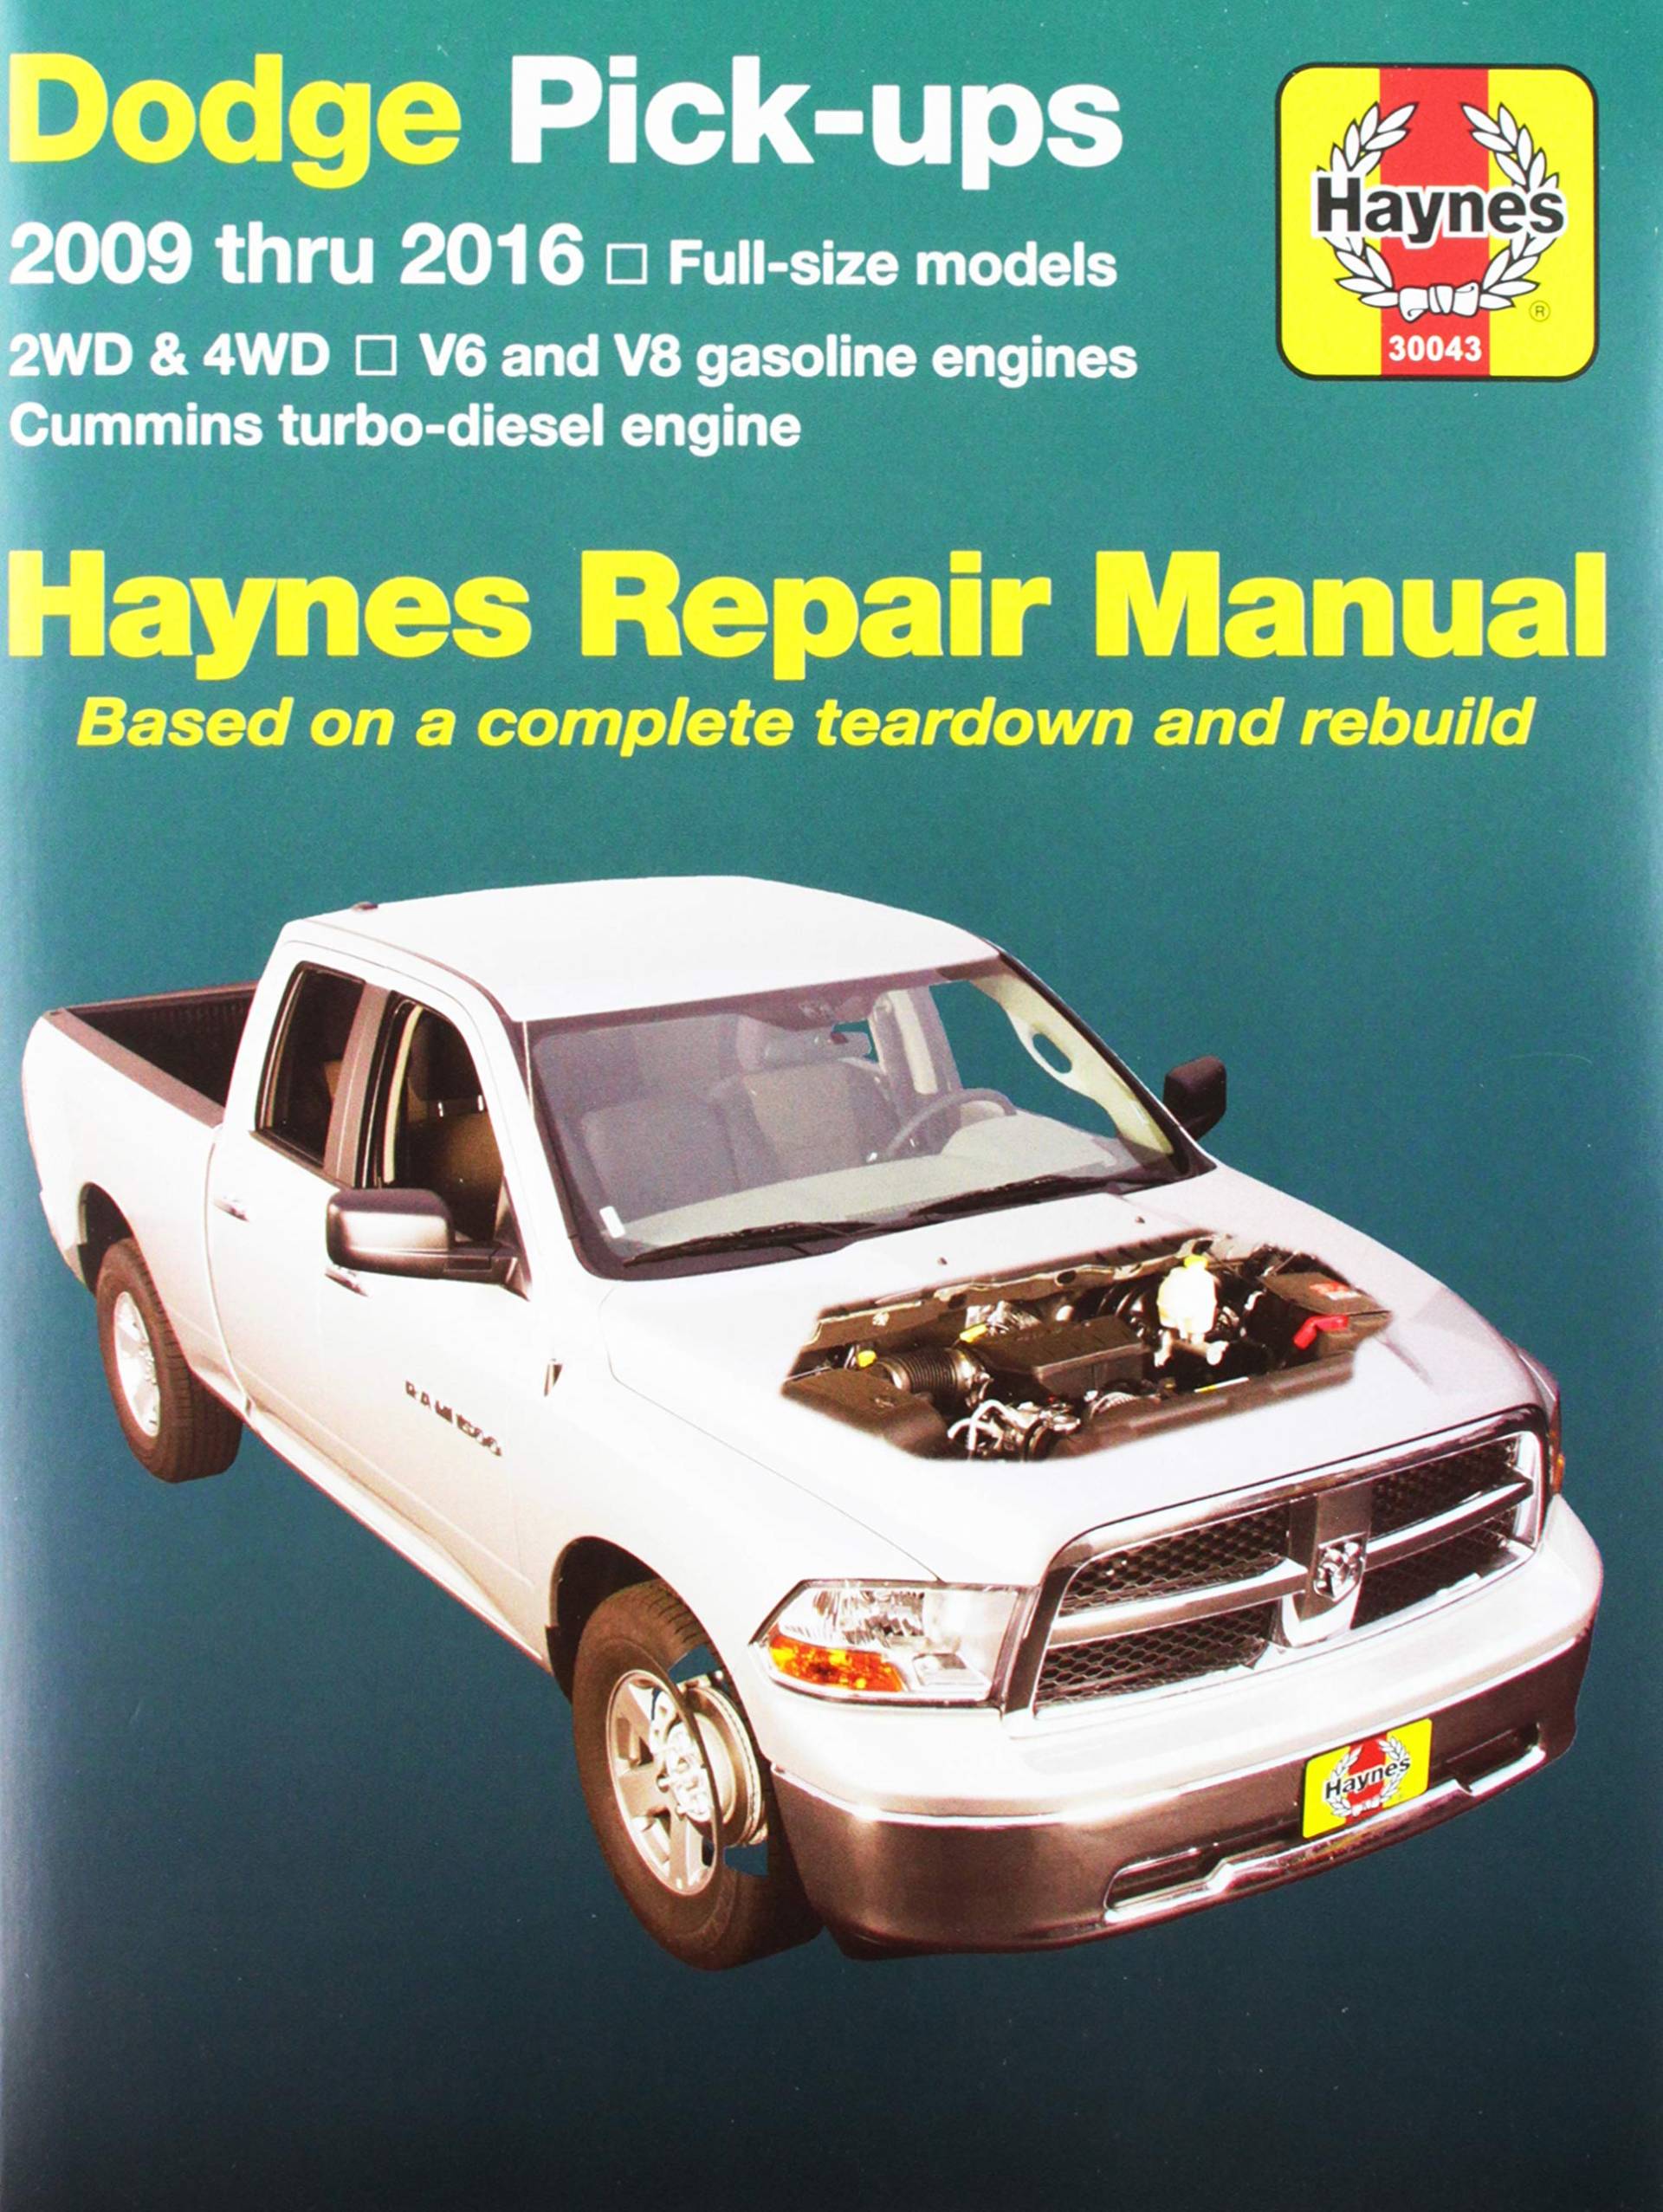 Haynes Repair Manuals 30043 für Dodge Pick-ups in voller Größe 2009-2016 von Haynes